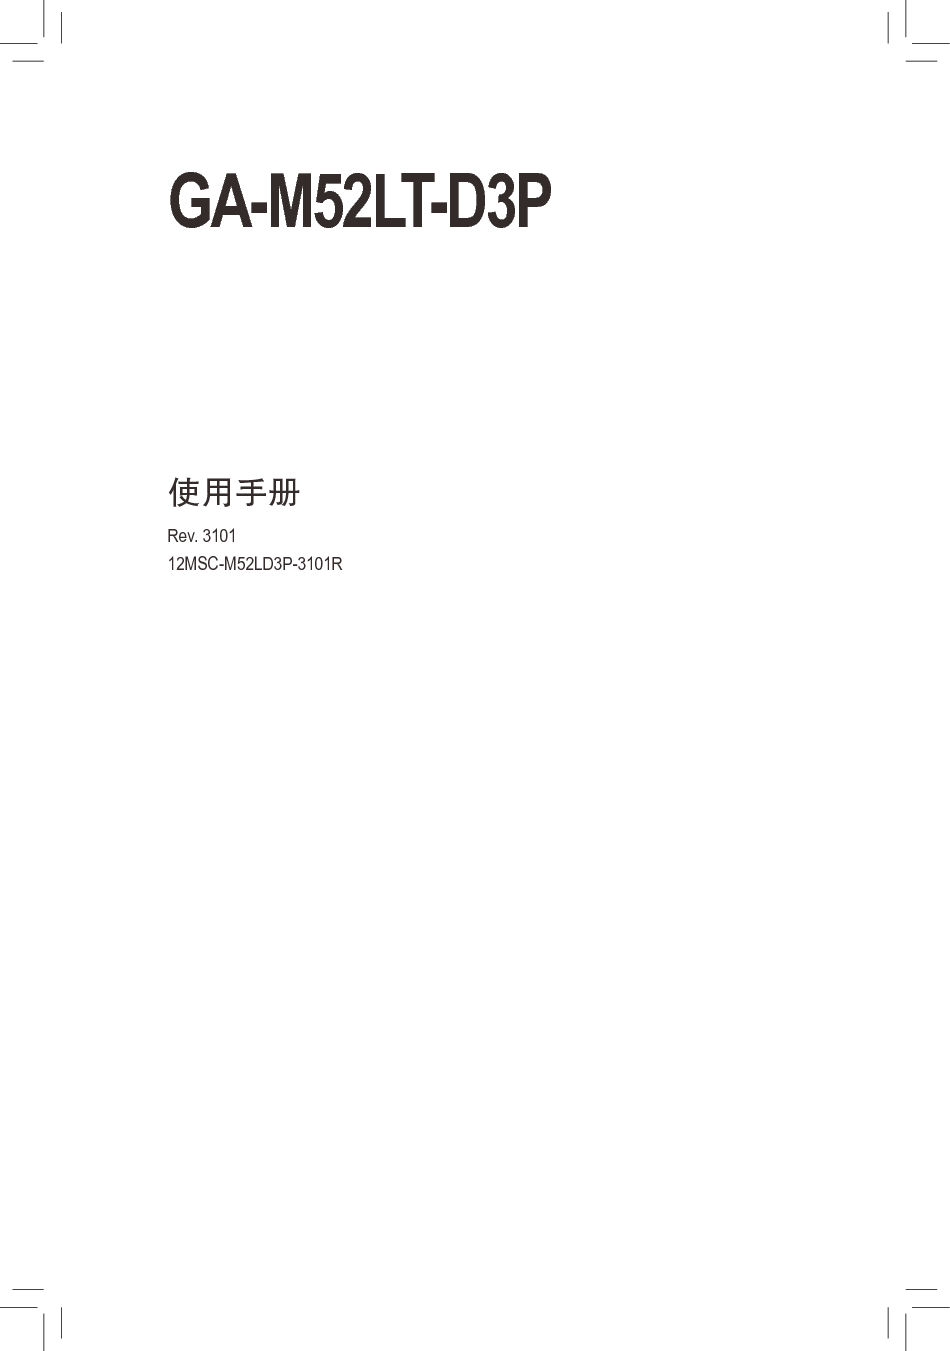 技嘉 Gigabyte GA-M52LT-D3P 3101版 使用手册 封面